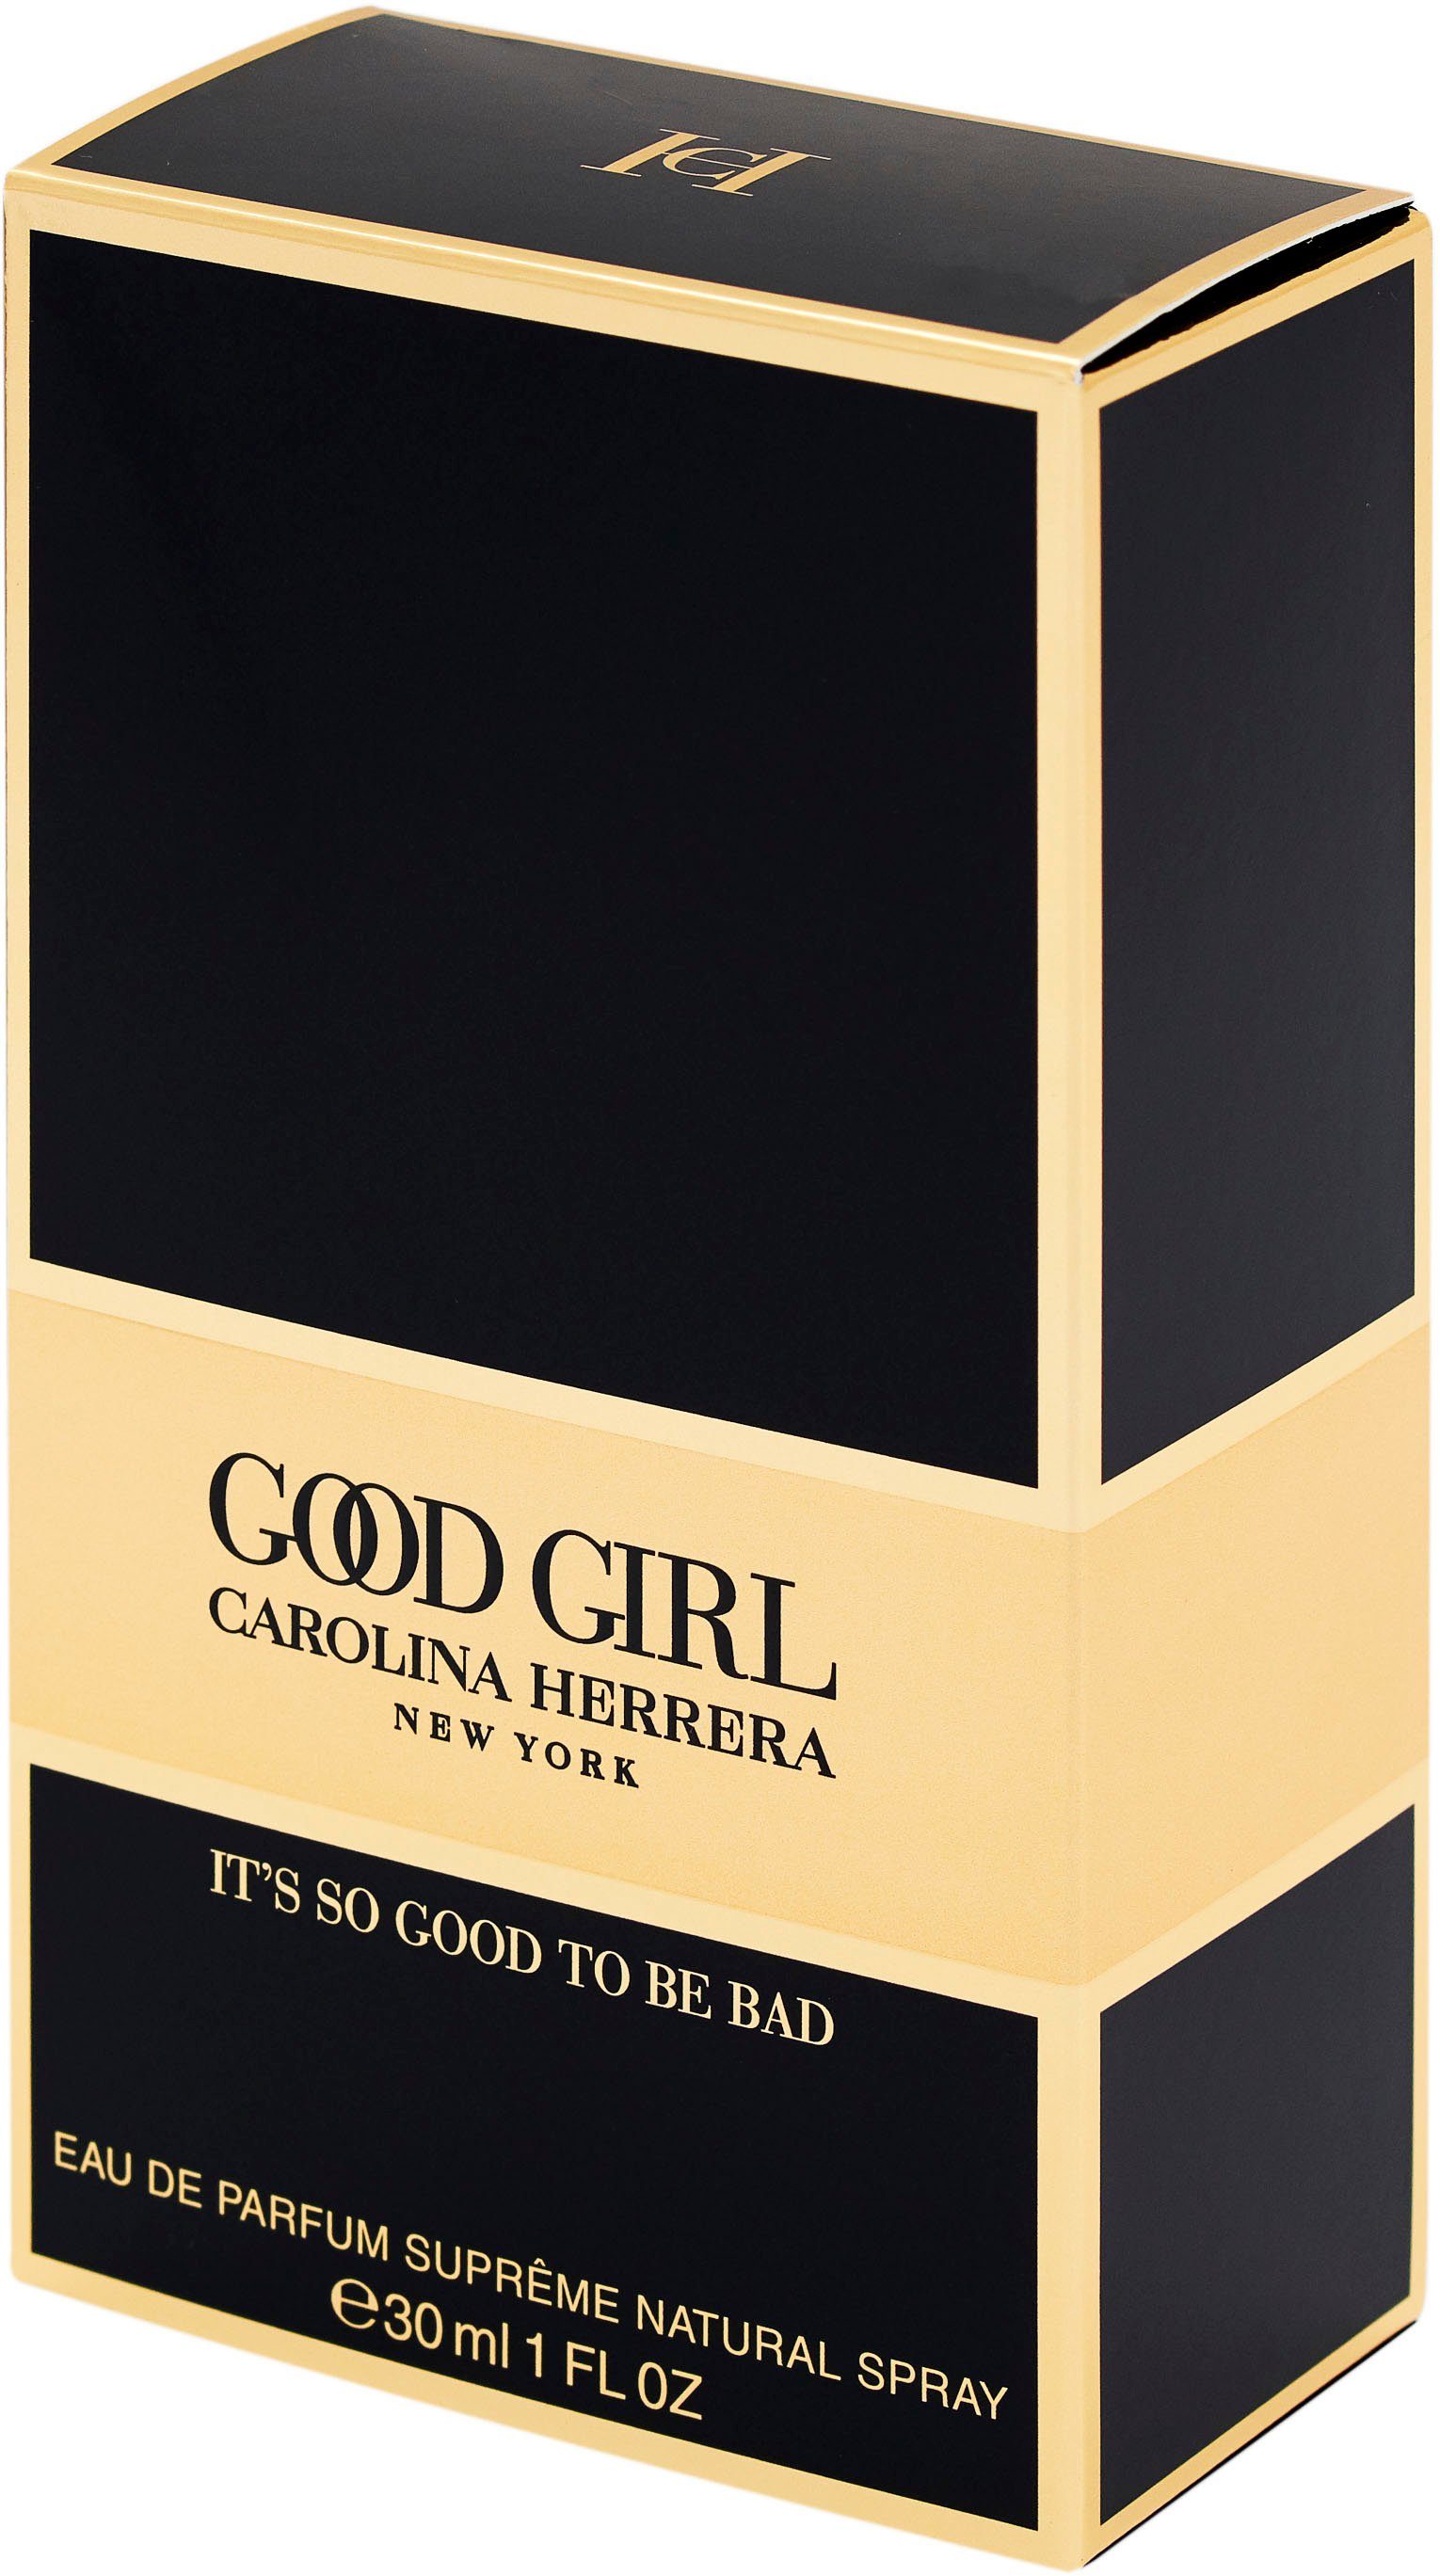 Carolina Eau Good Girl de Herrera Parfum Supreme